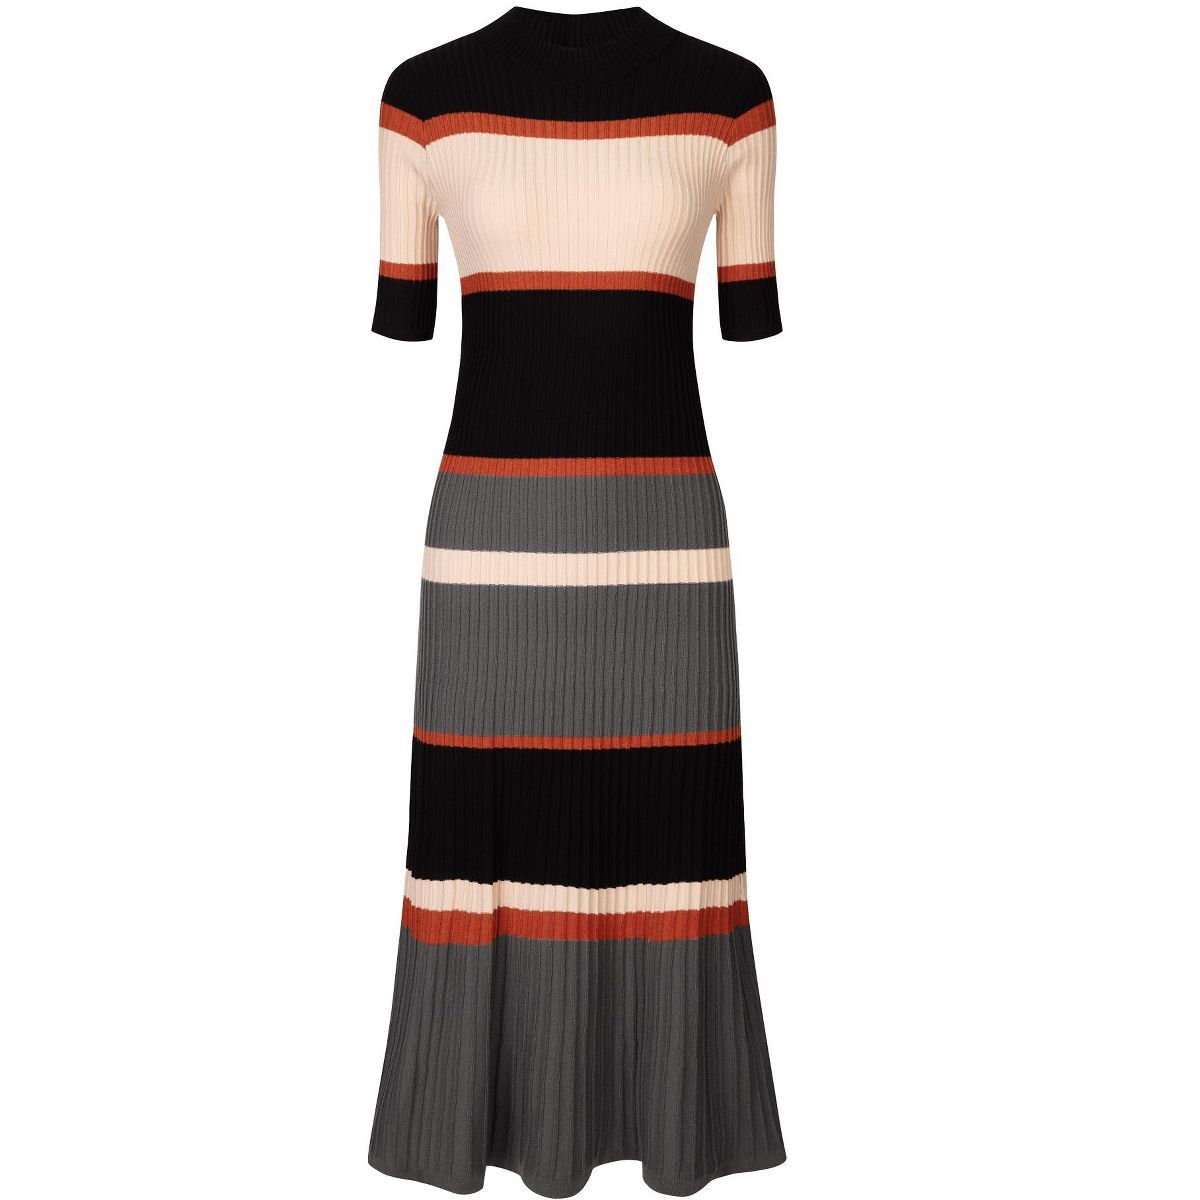 Hobemty Women's Striped Ribbed Dress Short Sleeve Midi Basic Knitted Dresses | Target